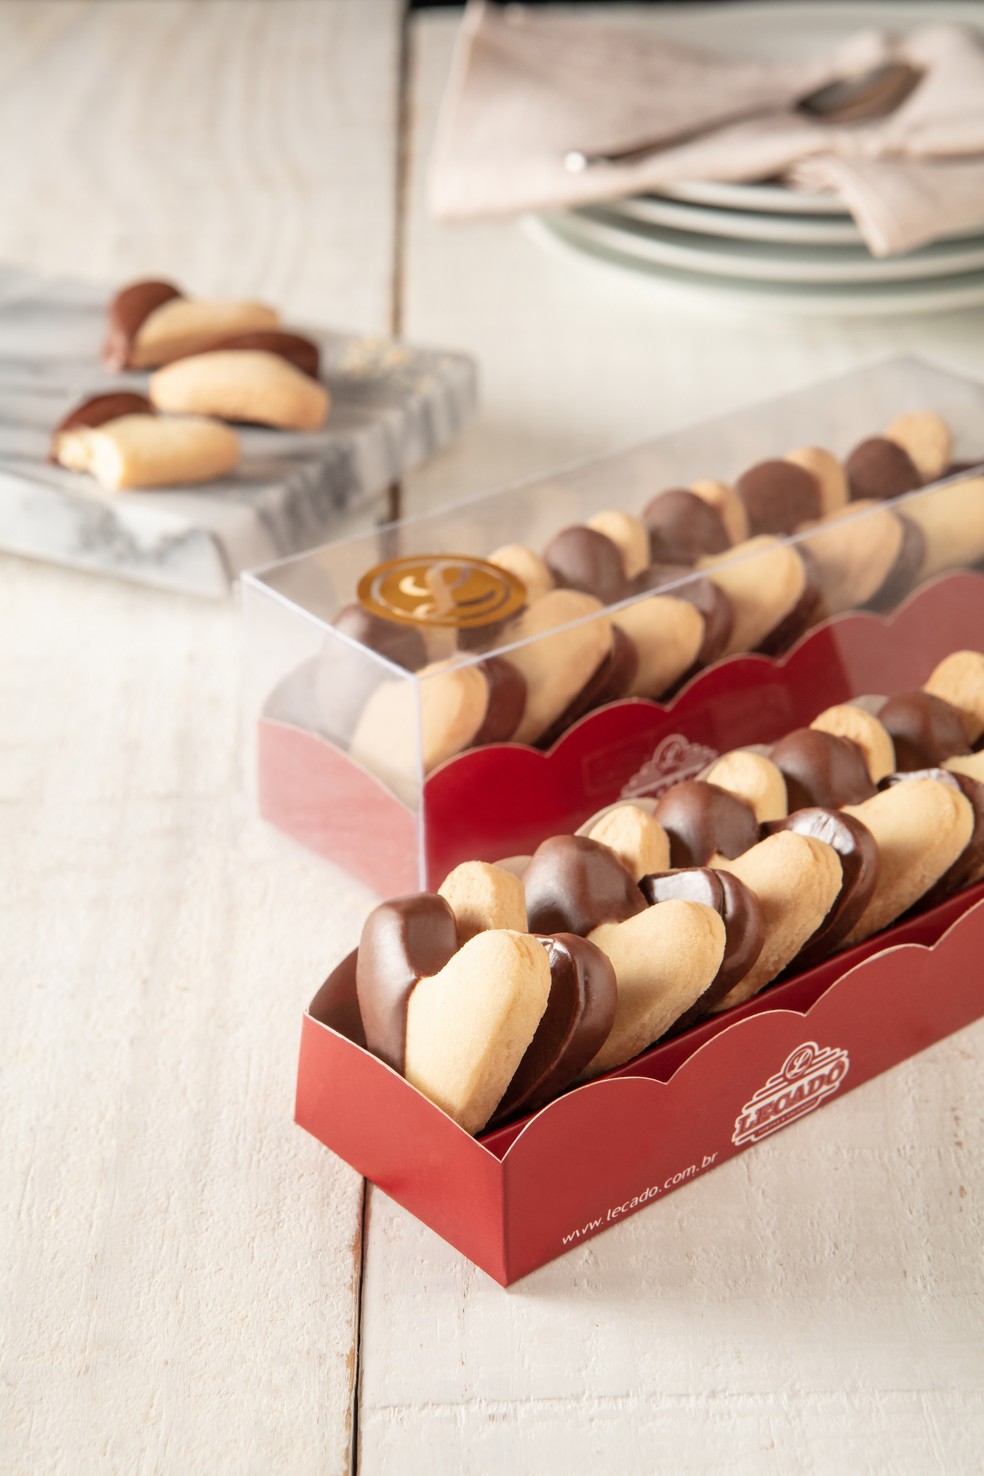 Caixa de biscoitos amanteigados em formato de coração é um dos destaques do Lecadô — Foto: Divulgação/Lecadô